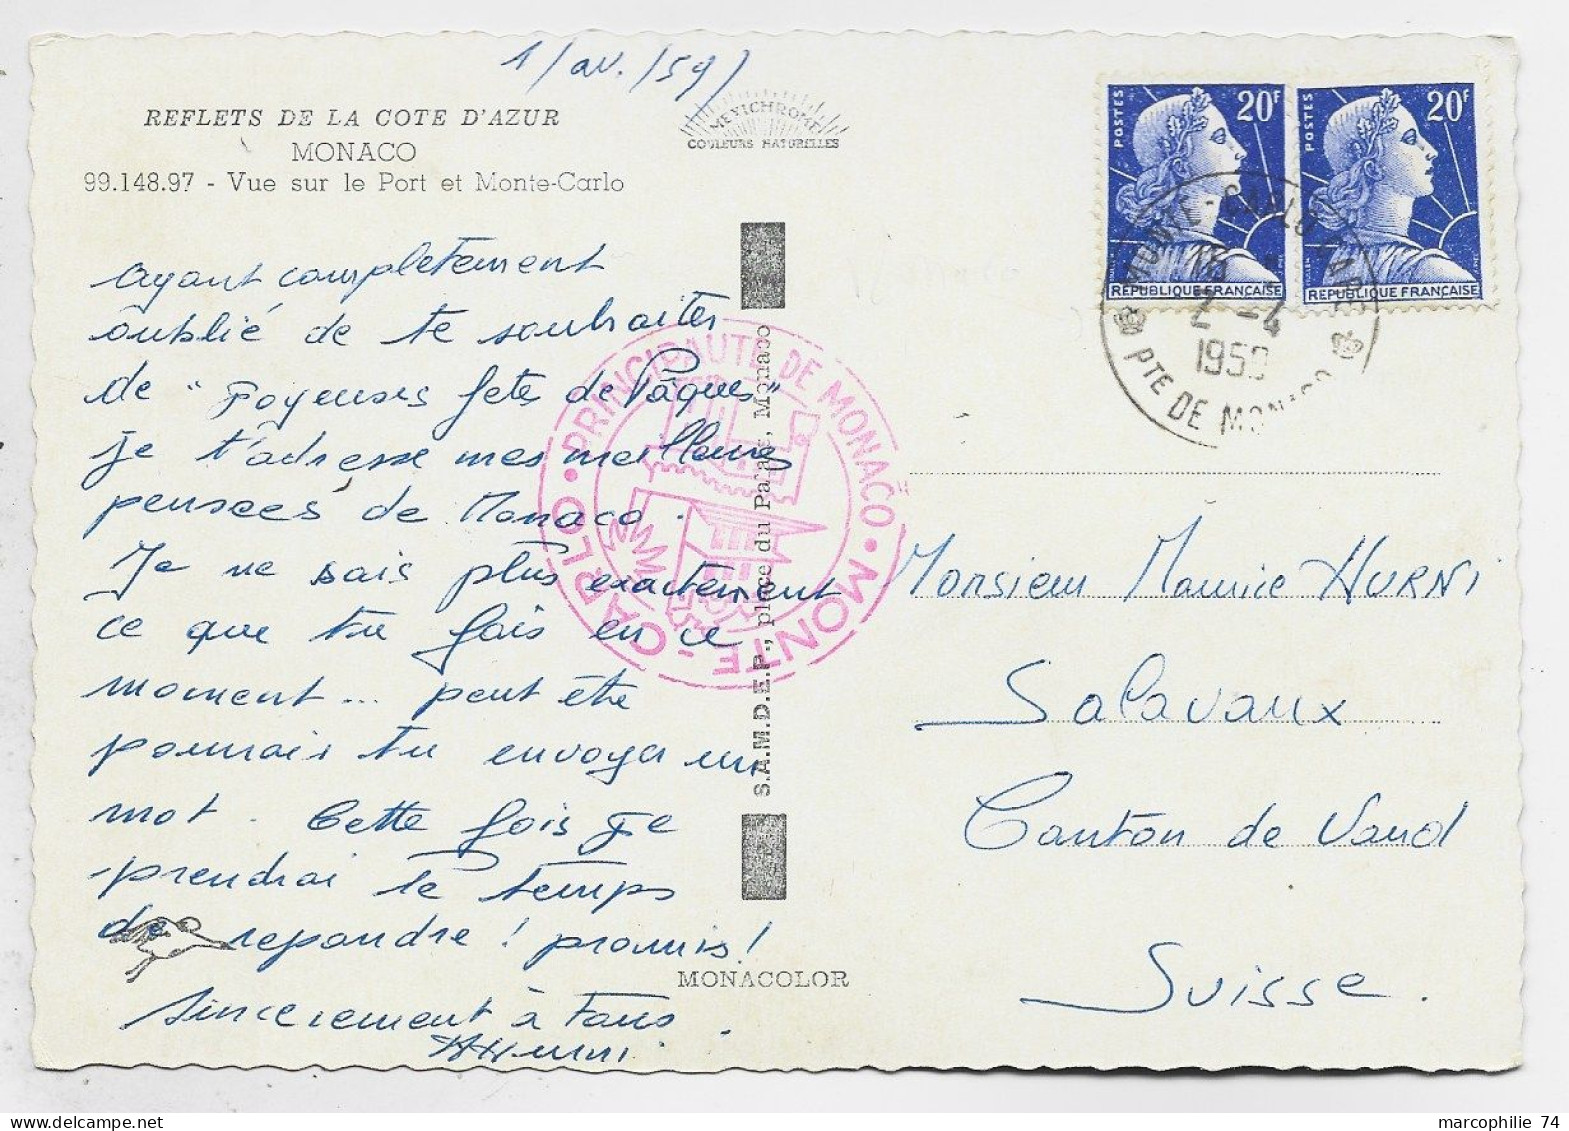 MULLER 20FRX2 CARTE TIMBRE A DATE MONTE CARLO  GARE 2.4.1959 PTE DE MONACO POUR SUISSE OBLITERATION RARE COTE 160€ - Poste Ferroviaire